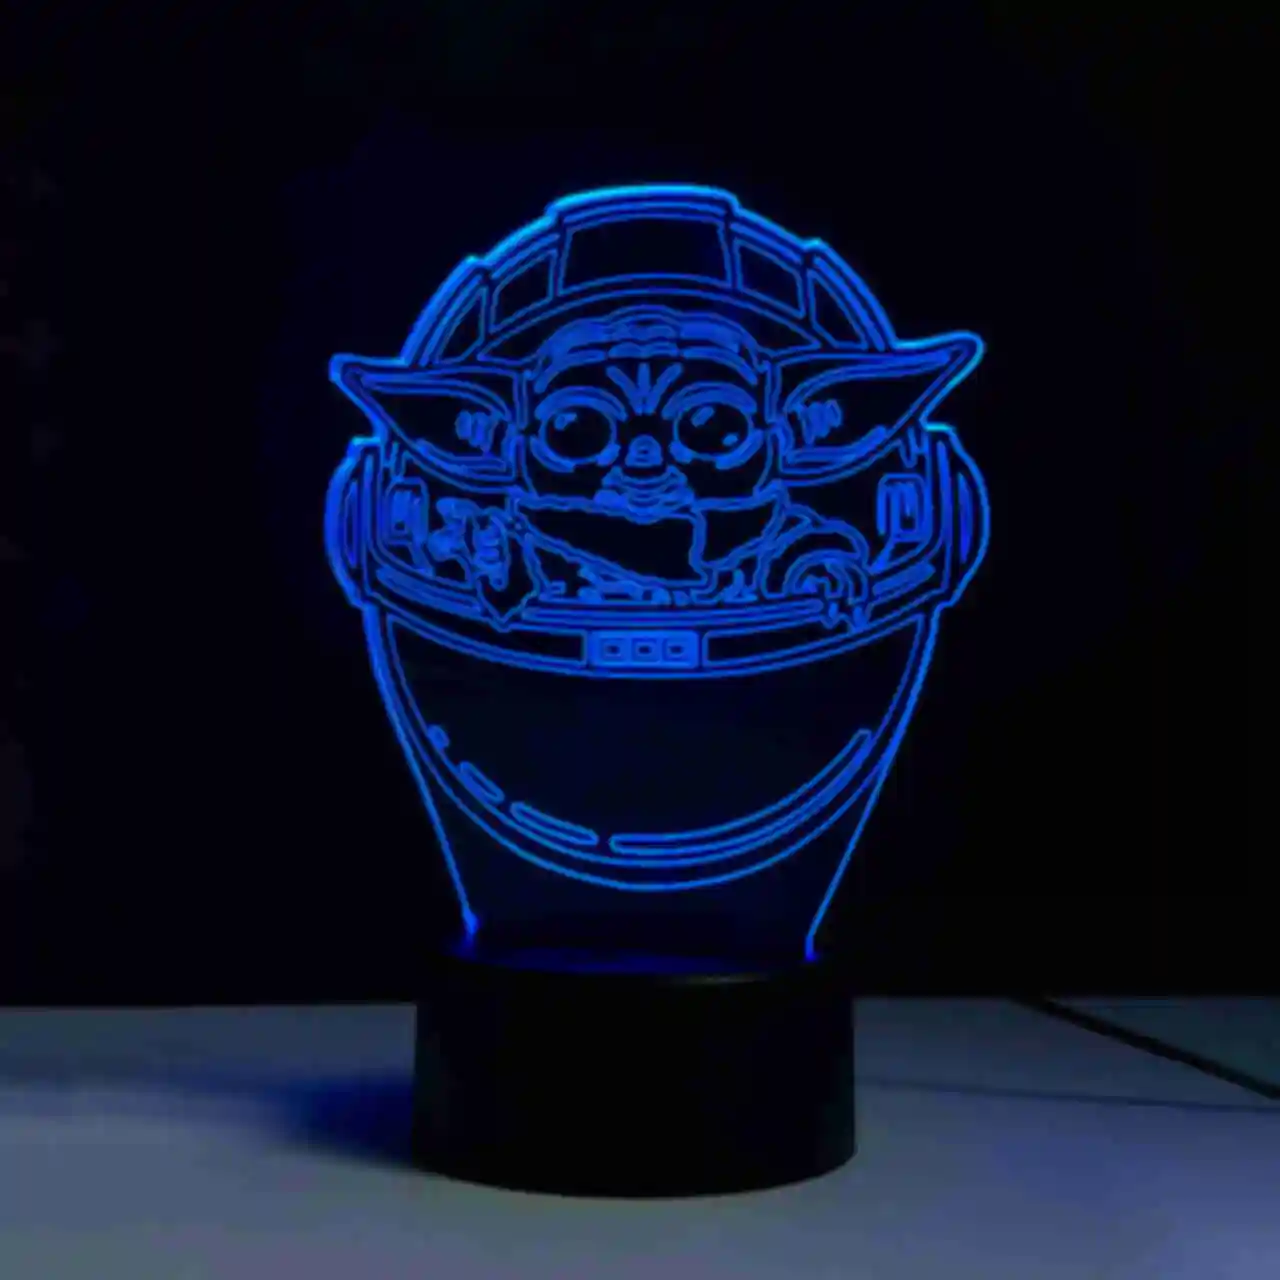 Светильник Baby Yoda ⦁ Лампа с малышом Грогу ⦁ Сувениры и аксессуары Star Wars и Mandalorian ⦁ Подарок Звездные Войны и Мандалорец. Фото №6